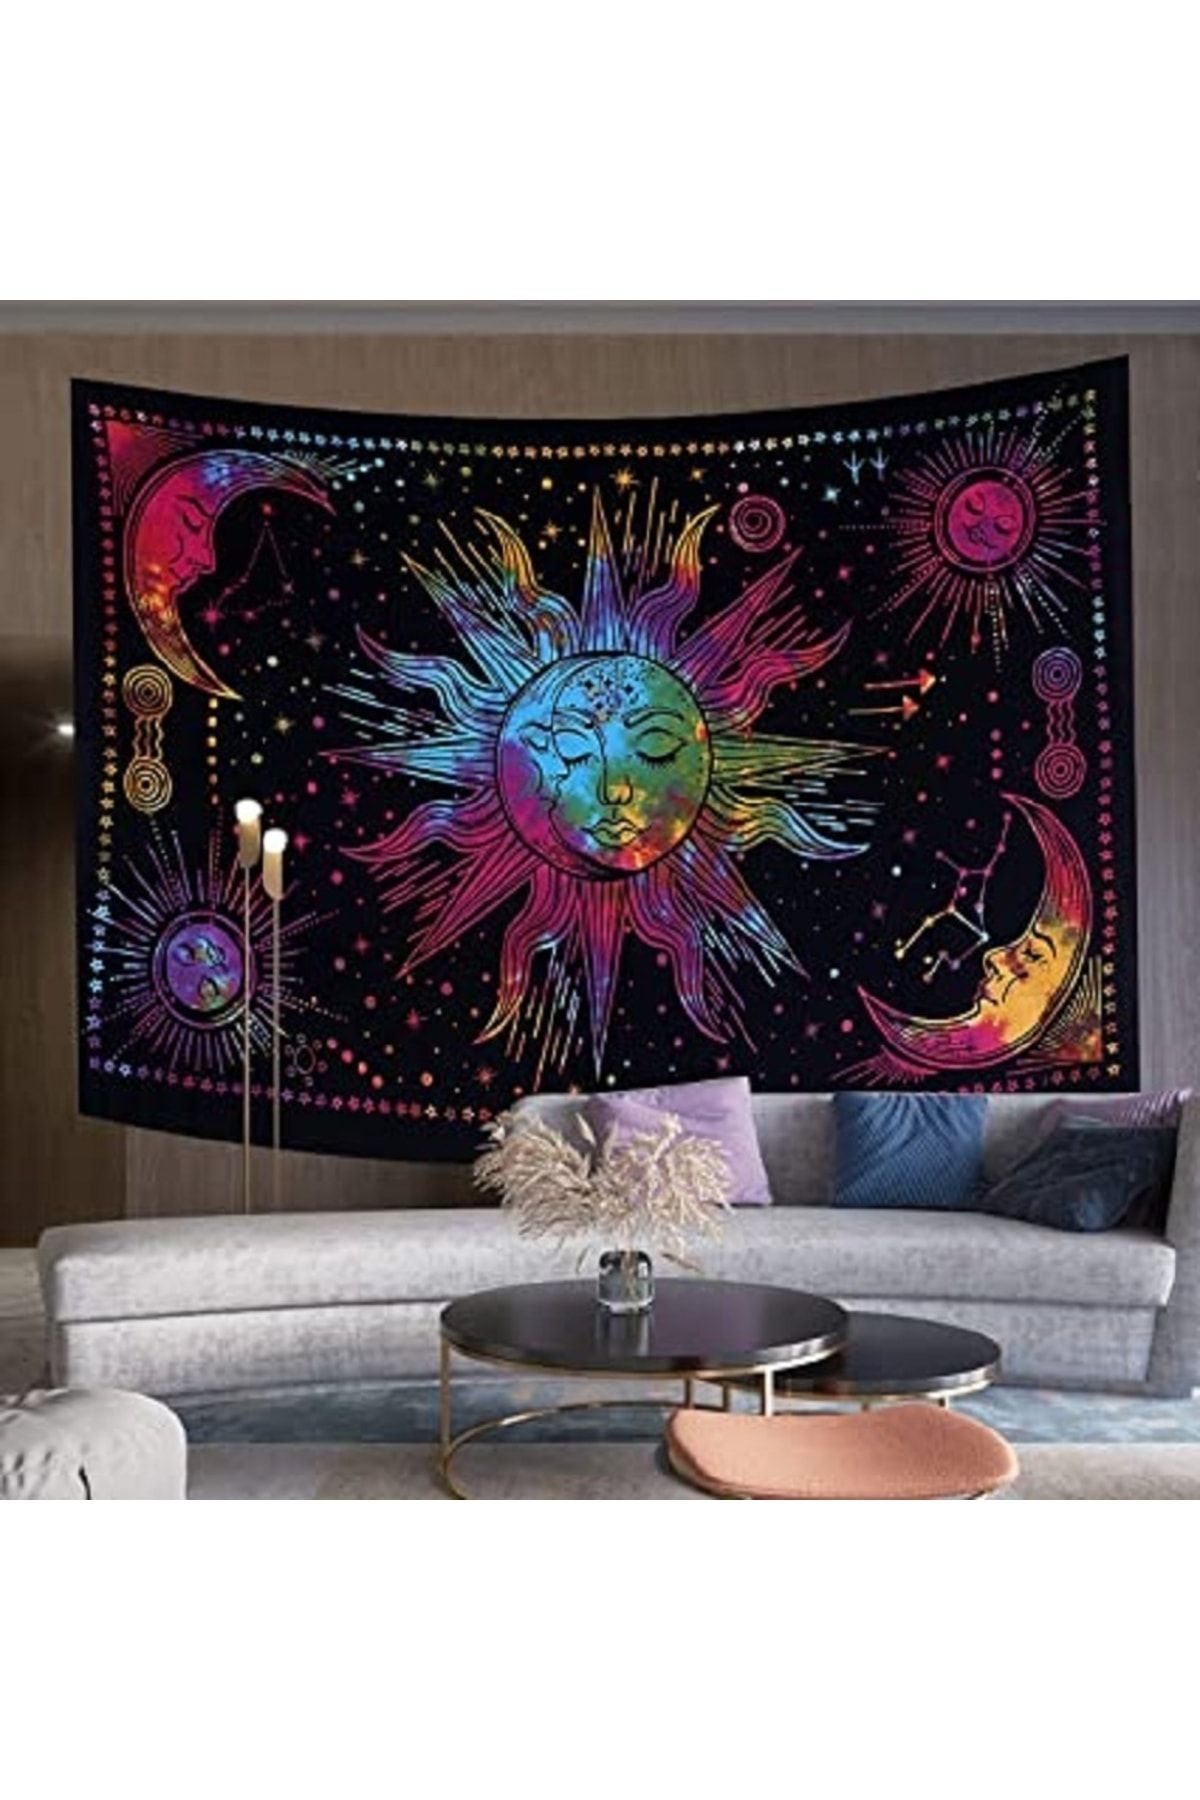 ALAMODECOR Güneş Ve Ay Renkli Mistik Duvar Örtüsü Duvar Halısı Tapestry